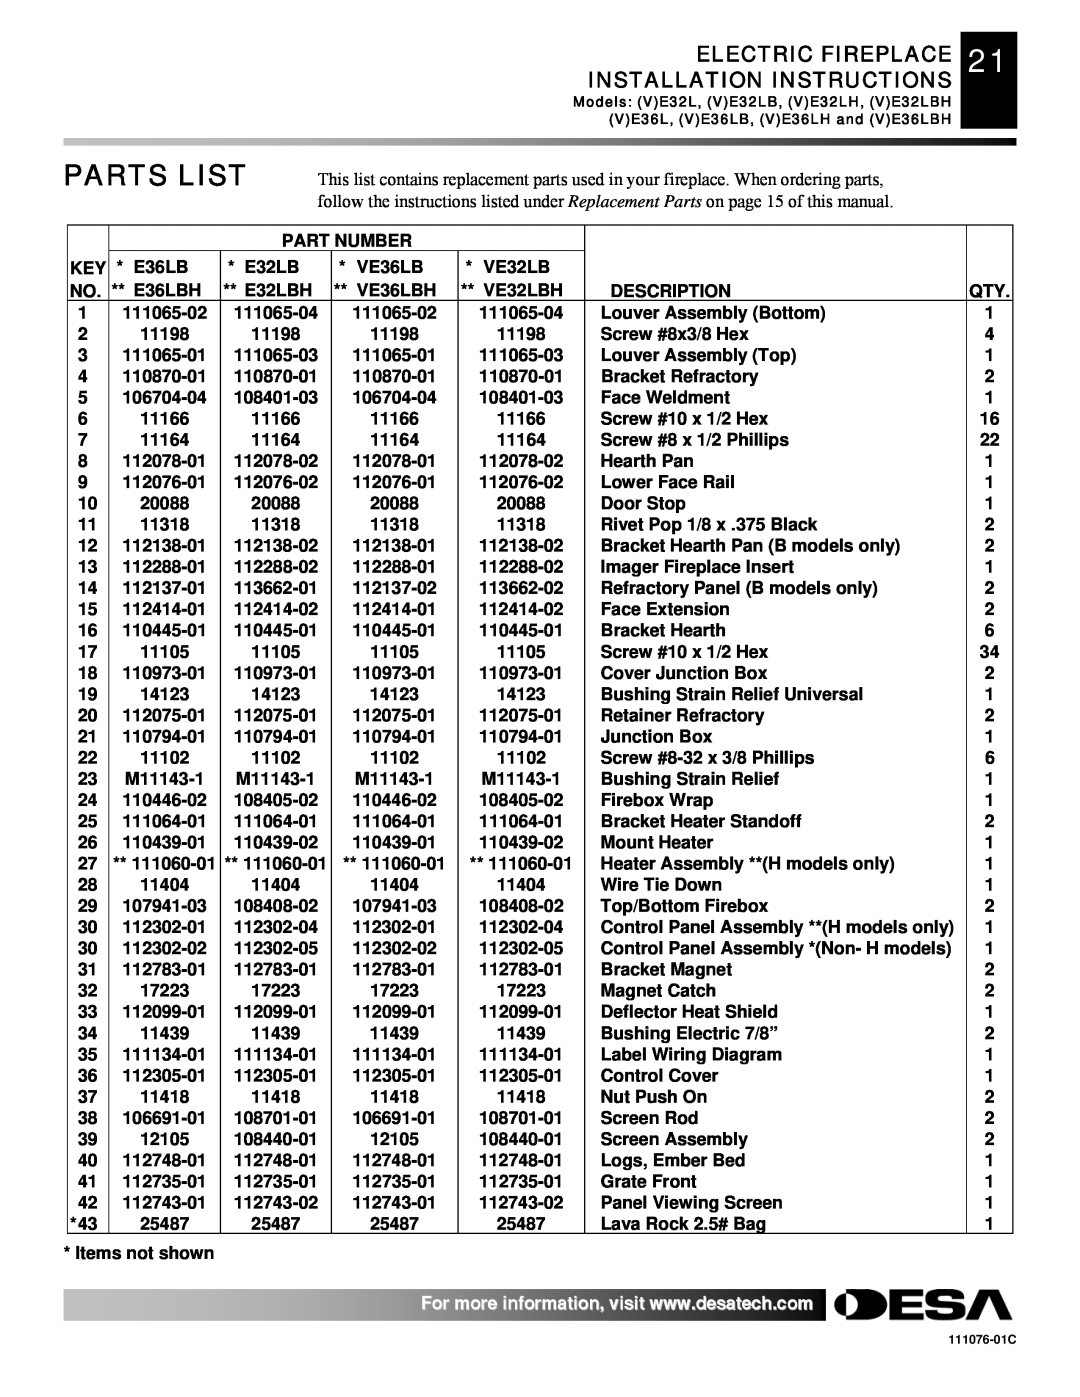 Desa E36(L)(B)(H) Parts List, Part Number, VE36LBH, VE32LBH, Description, 111065-02, 111065-04 